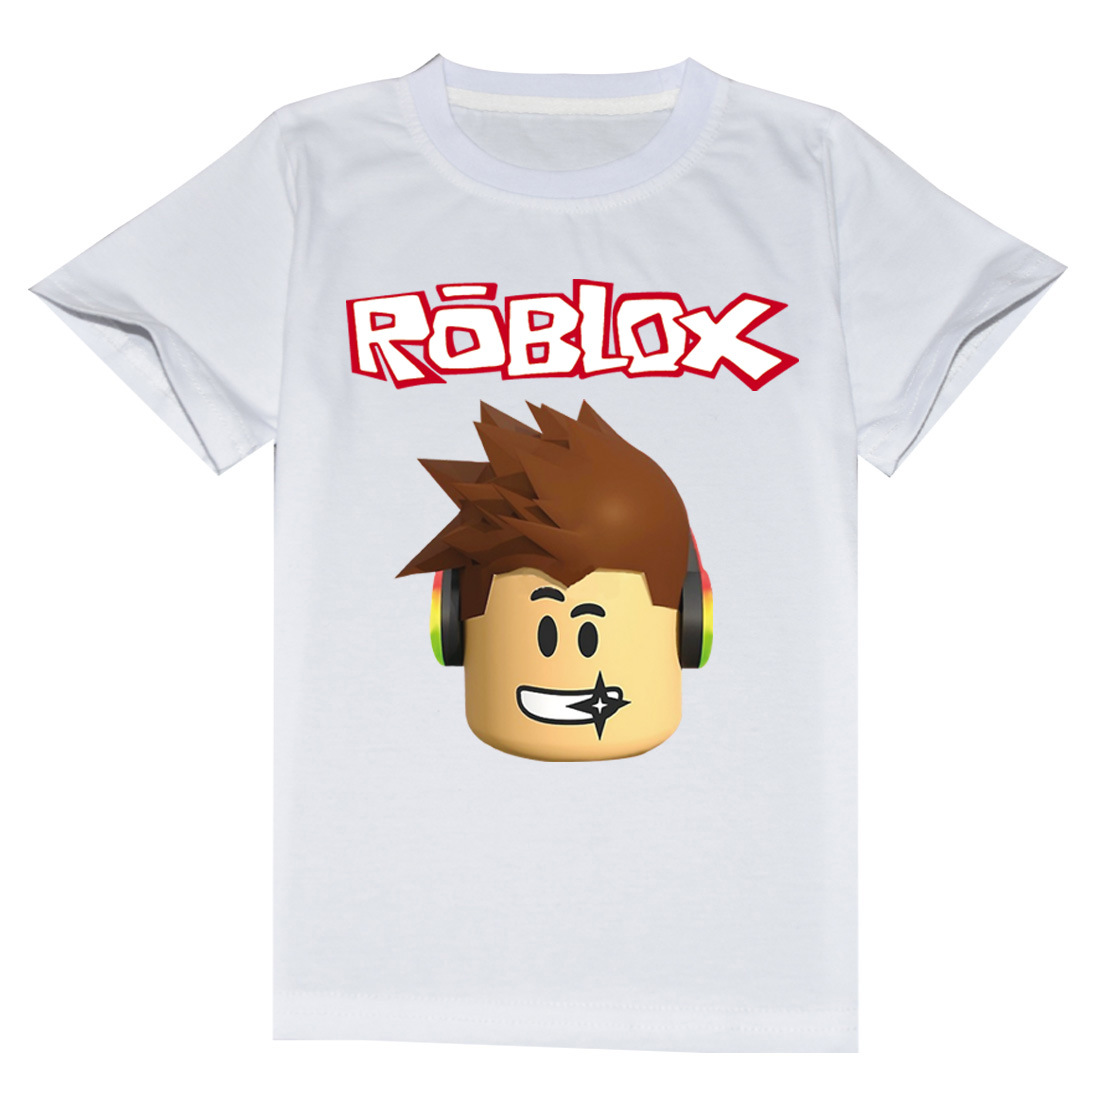 Nếu bạn đang tìm kiếm những chiếc áo thun Roblox cho bé yêu của mình thì đây chính là điểm đến lý tưởng. Tất cả các mẫu áo được thiết kế tinh xảo, đẹp mắt và đảm bảo mang đến cho bé của bạn sự thoải mái và ấm áp.